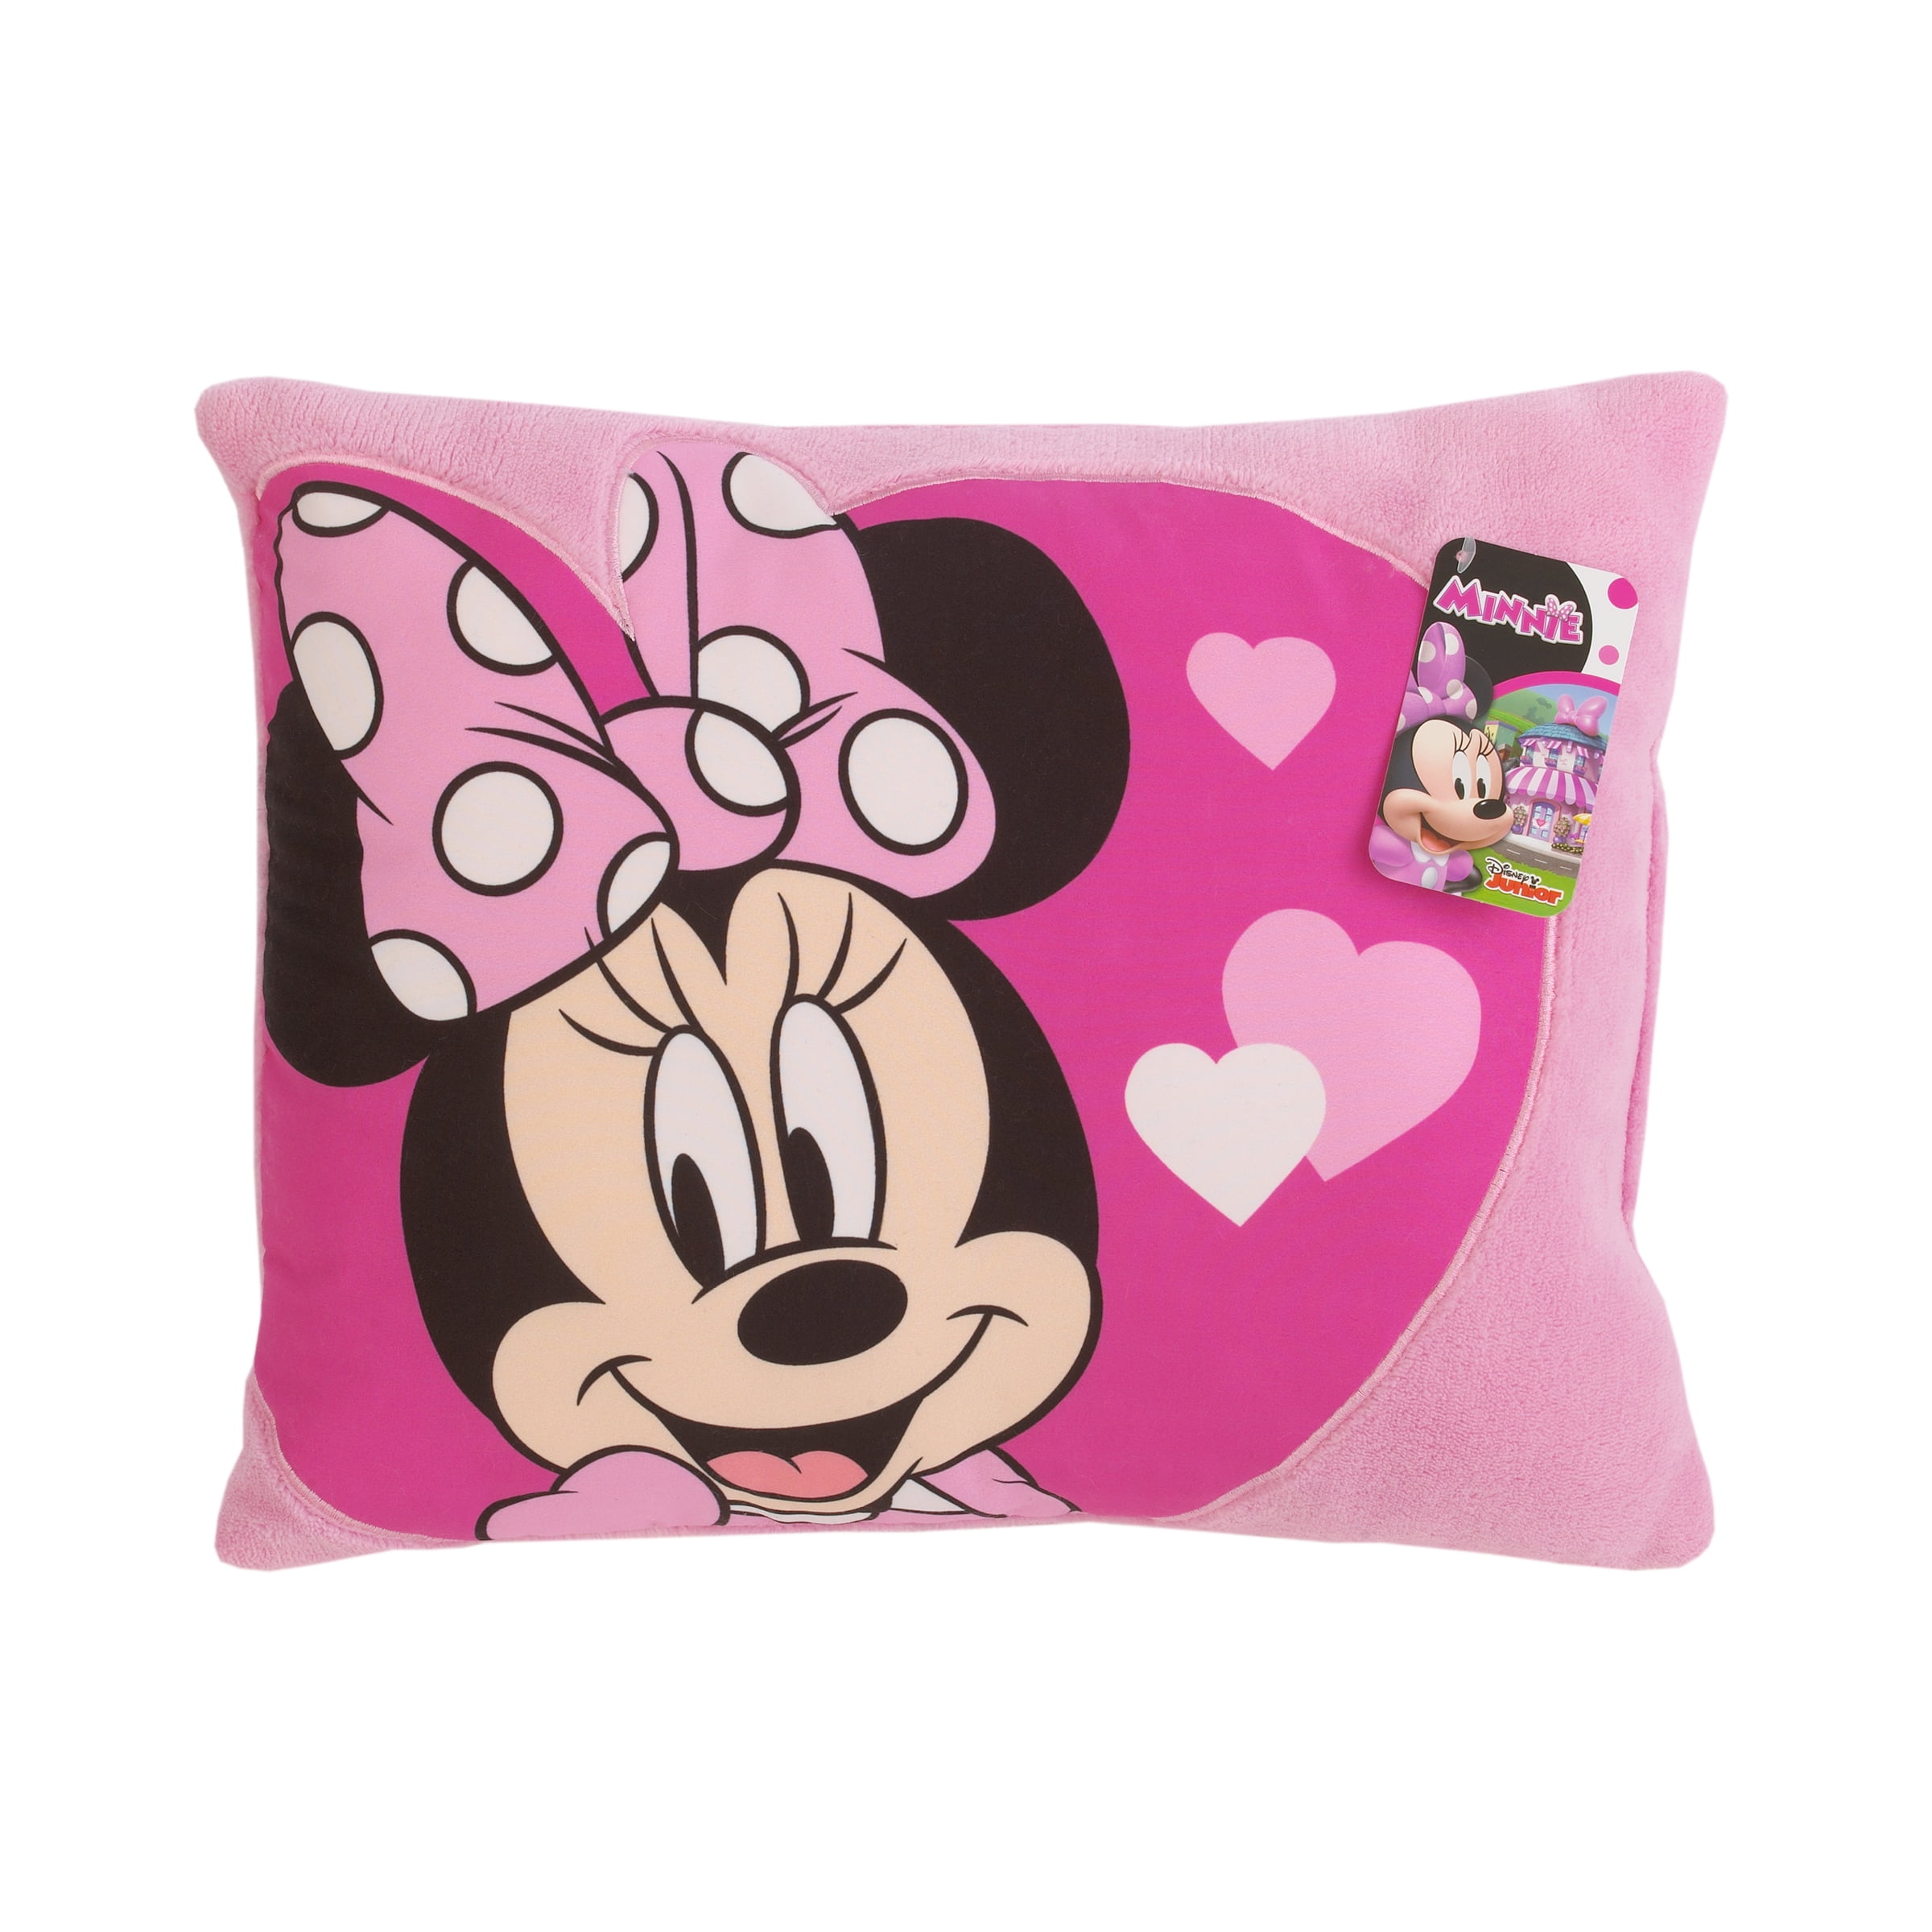 Minnie Mouse Pillow Disney Christmas Theme Soft Plush Pillow 